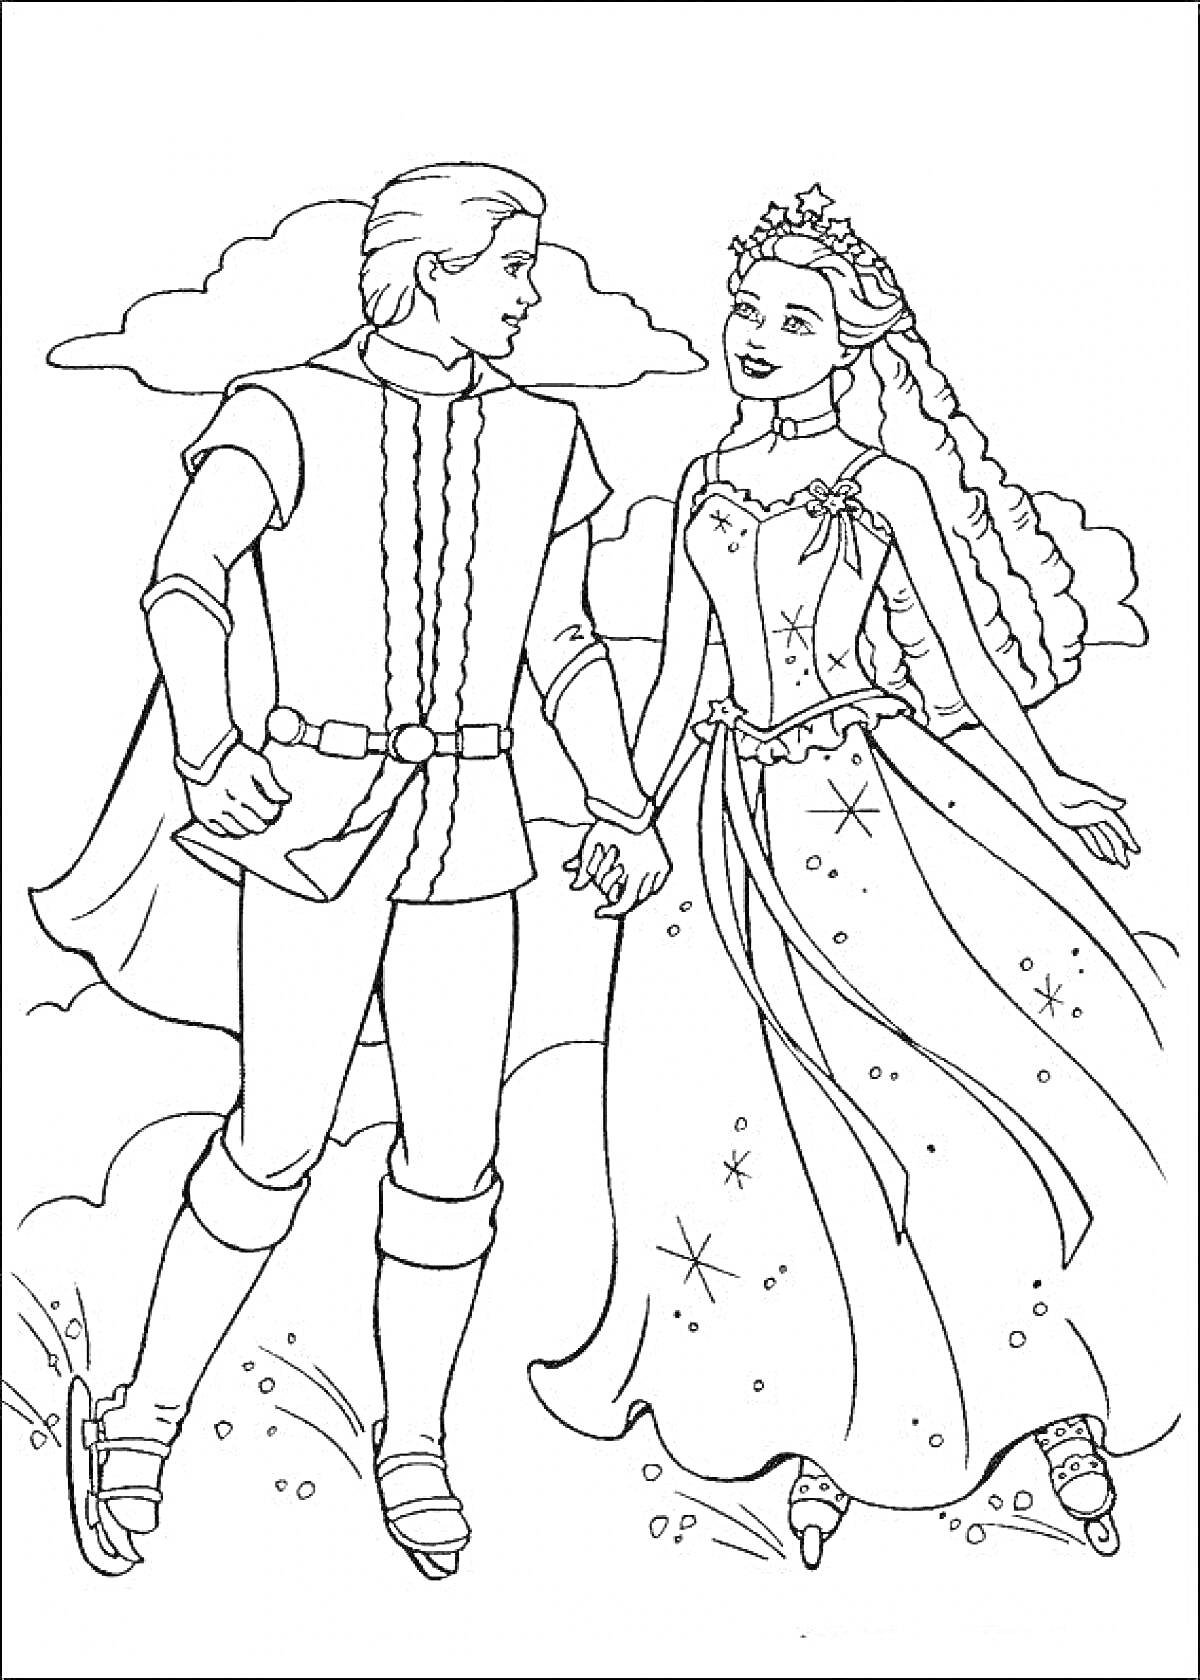 Барби и Кен в нарядных костюмах на фоне облаков, держась за руки